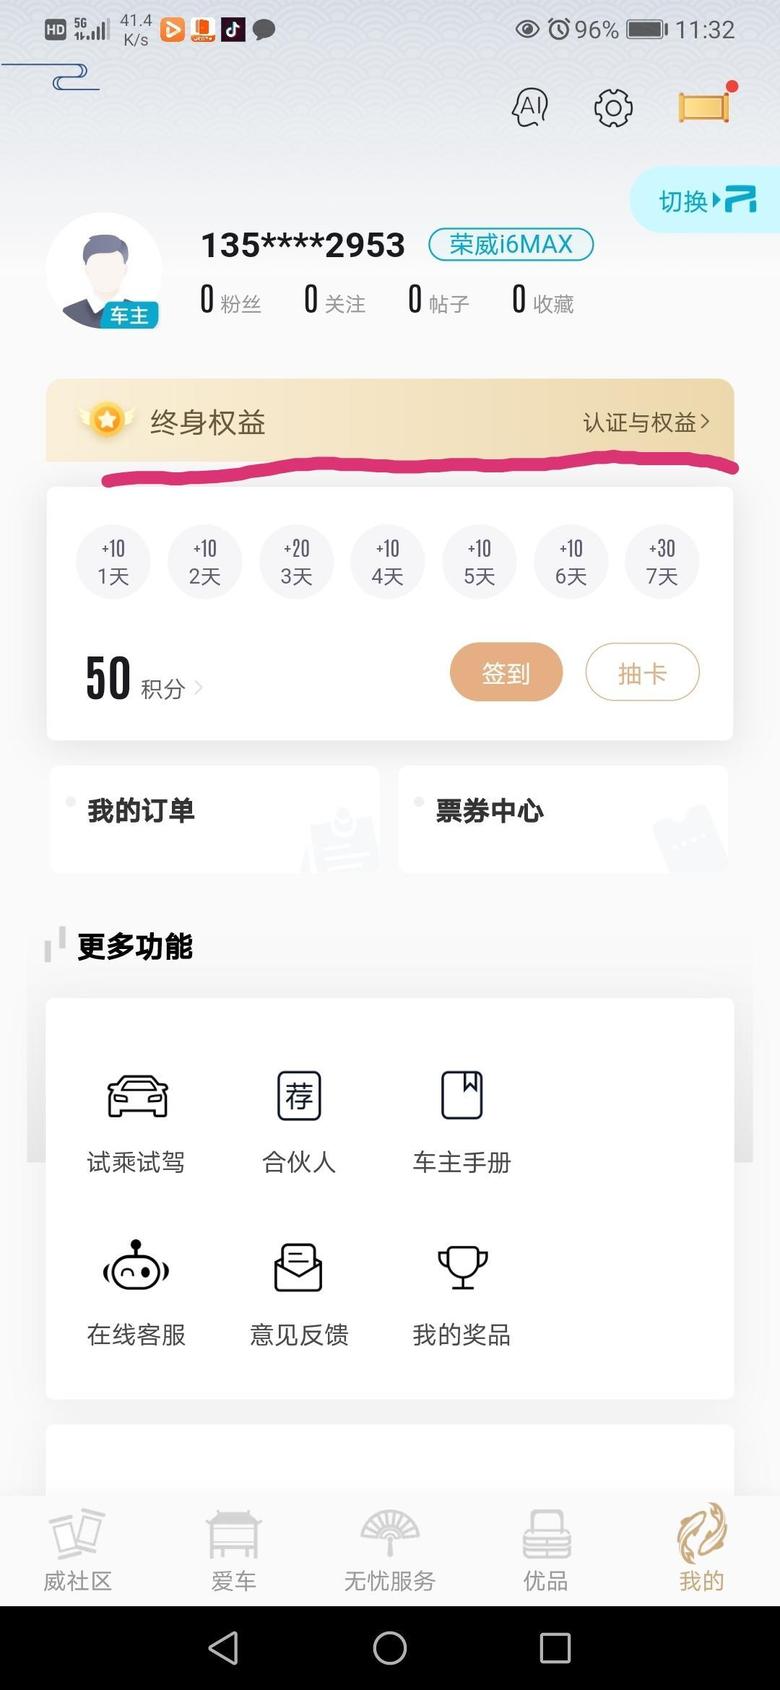 荣威i6 max荣威app上面权益是不是要上传行驶证之后才看的到